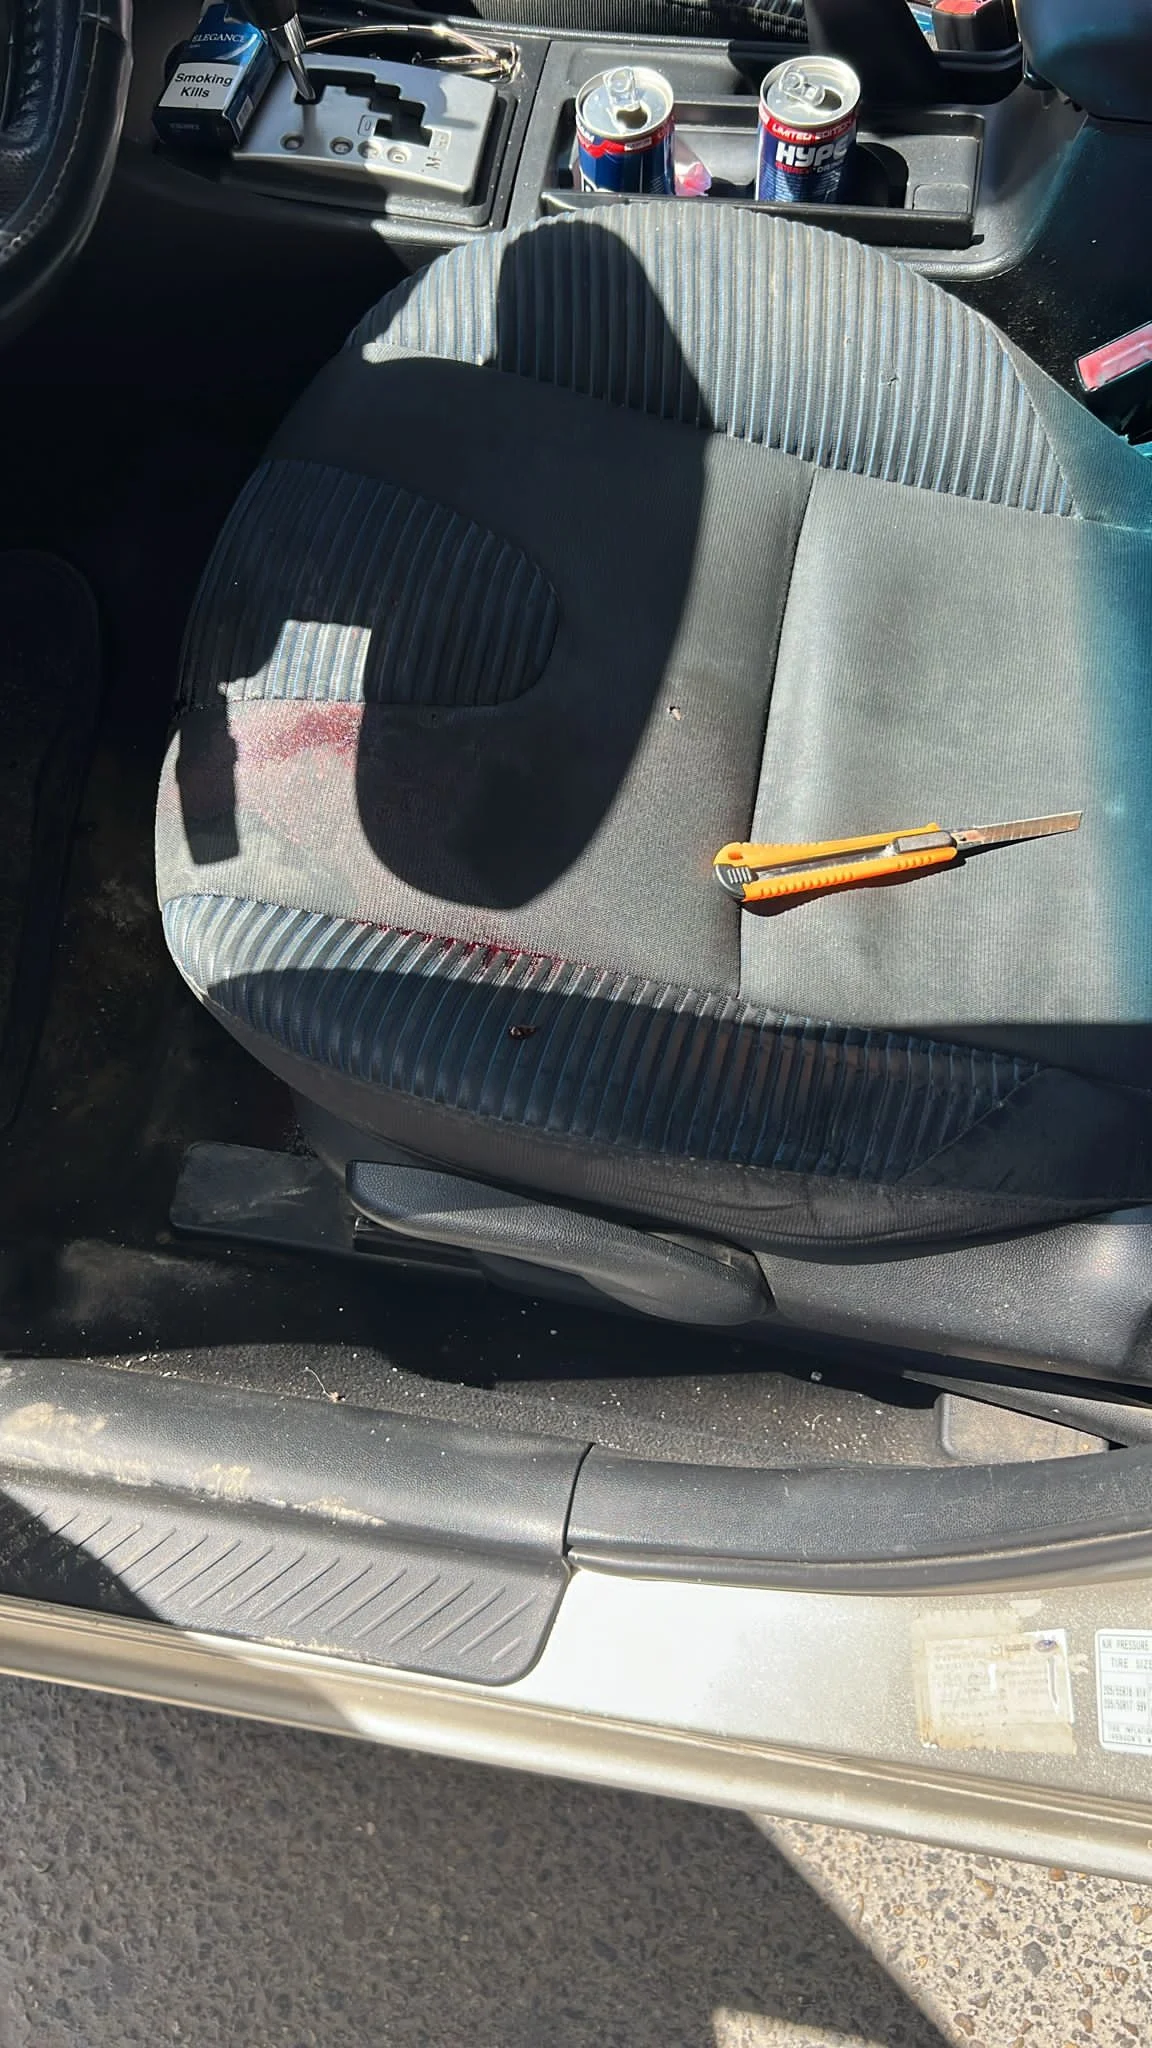 הסכין שנמצאה ברכב